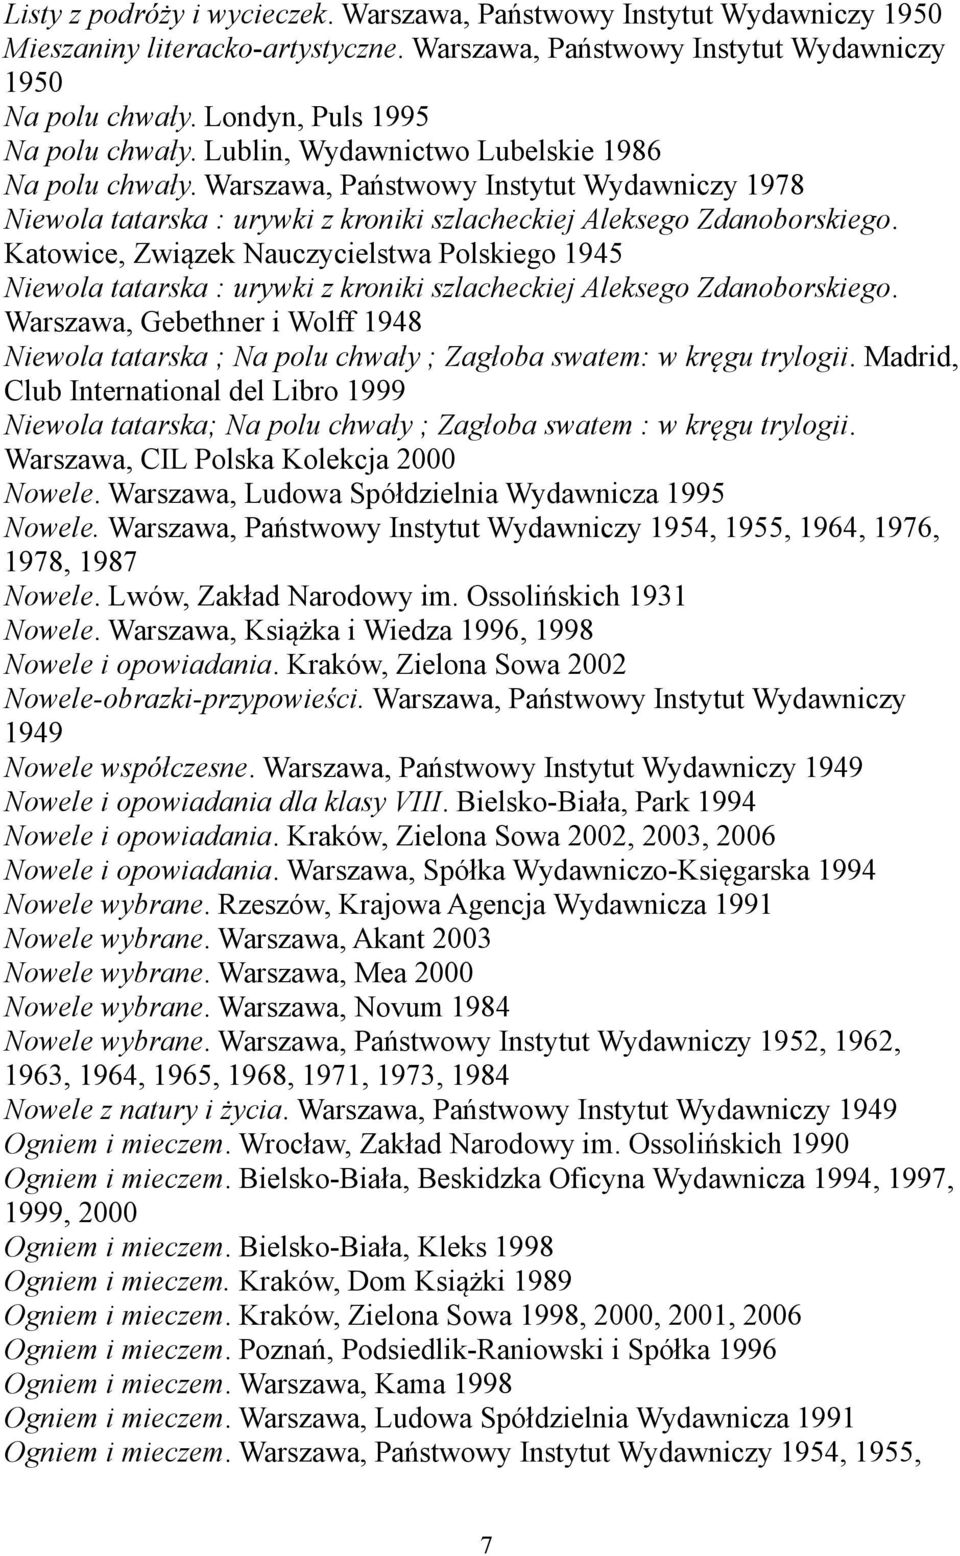 Warszawa, Państwowy Instytut Wydawniczy 1978 Niewola tatarska : urywki z kroniki szlacheckiej Aleksego Zdanoborskiego.